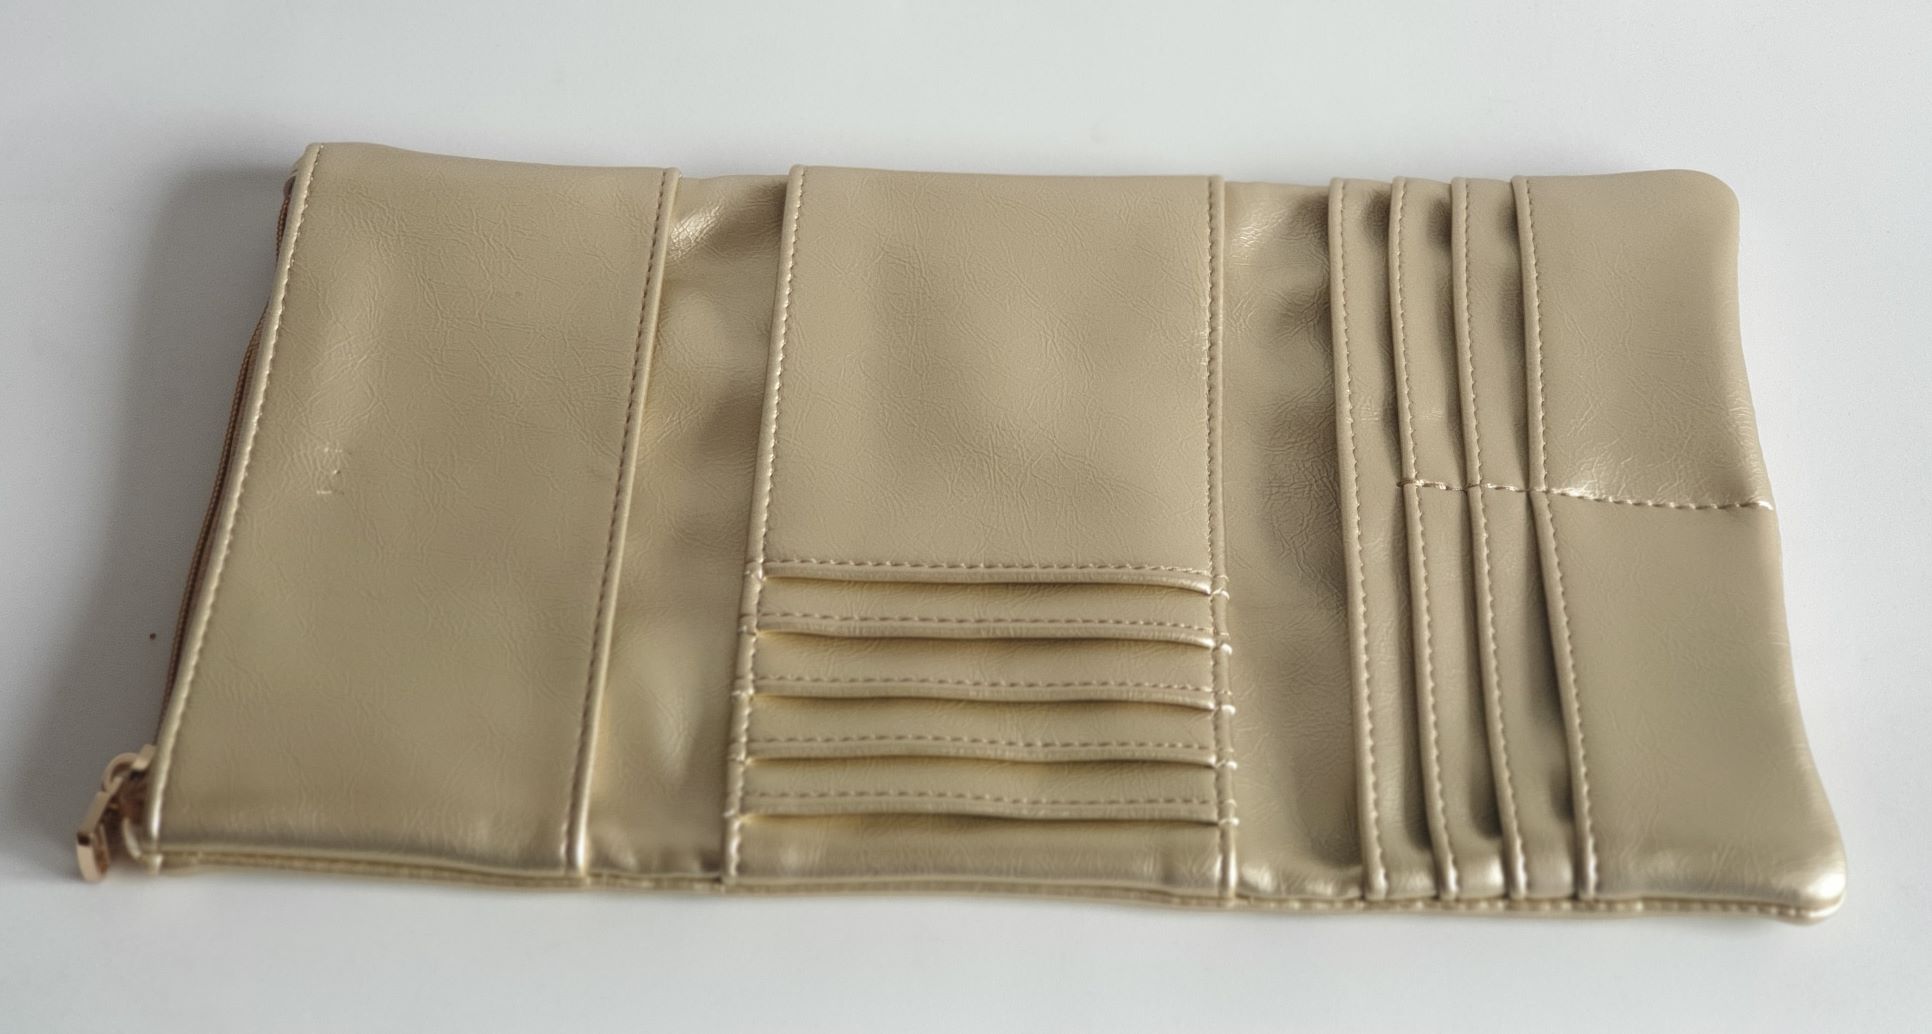 Buy Baggit Women's 3 Fold Wallet - Small (Orange) at Amazon.in